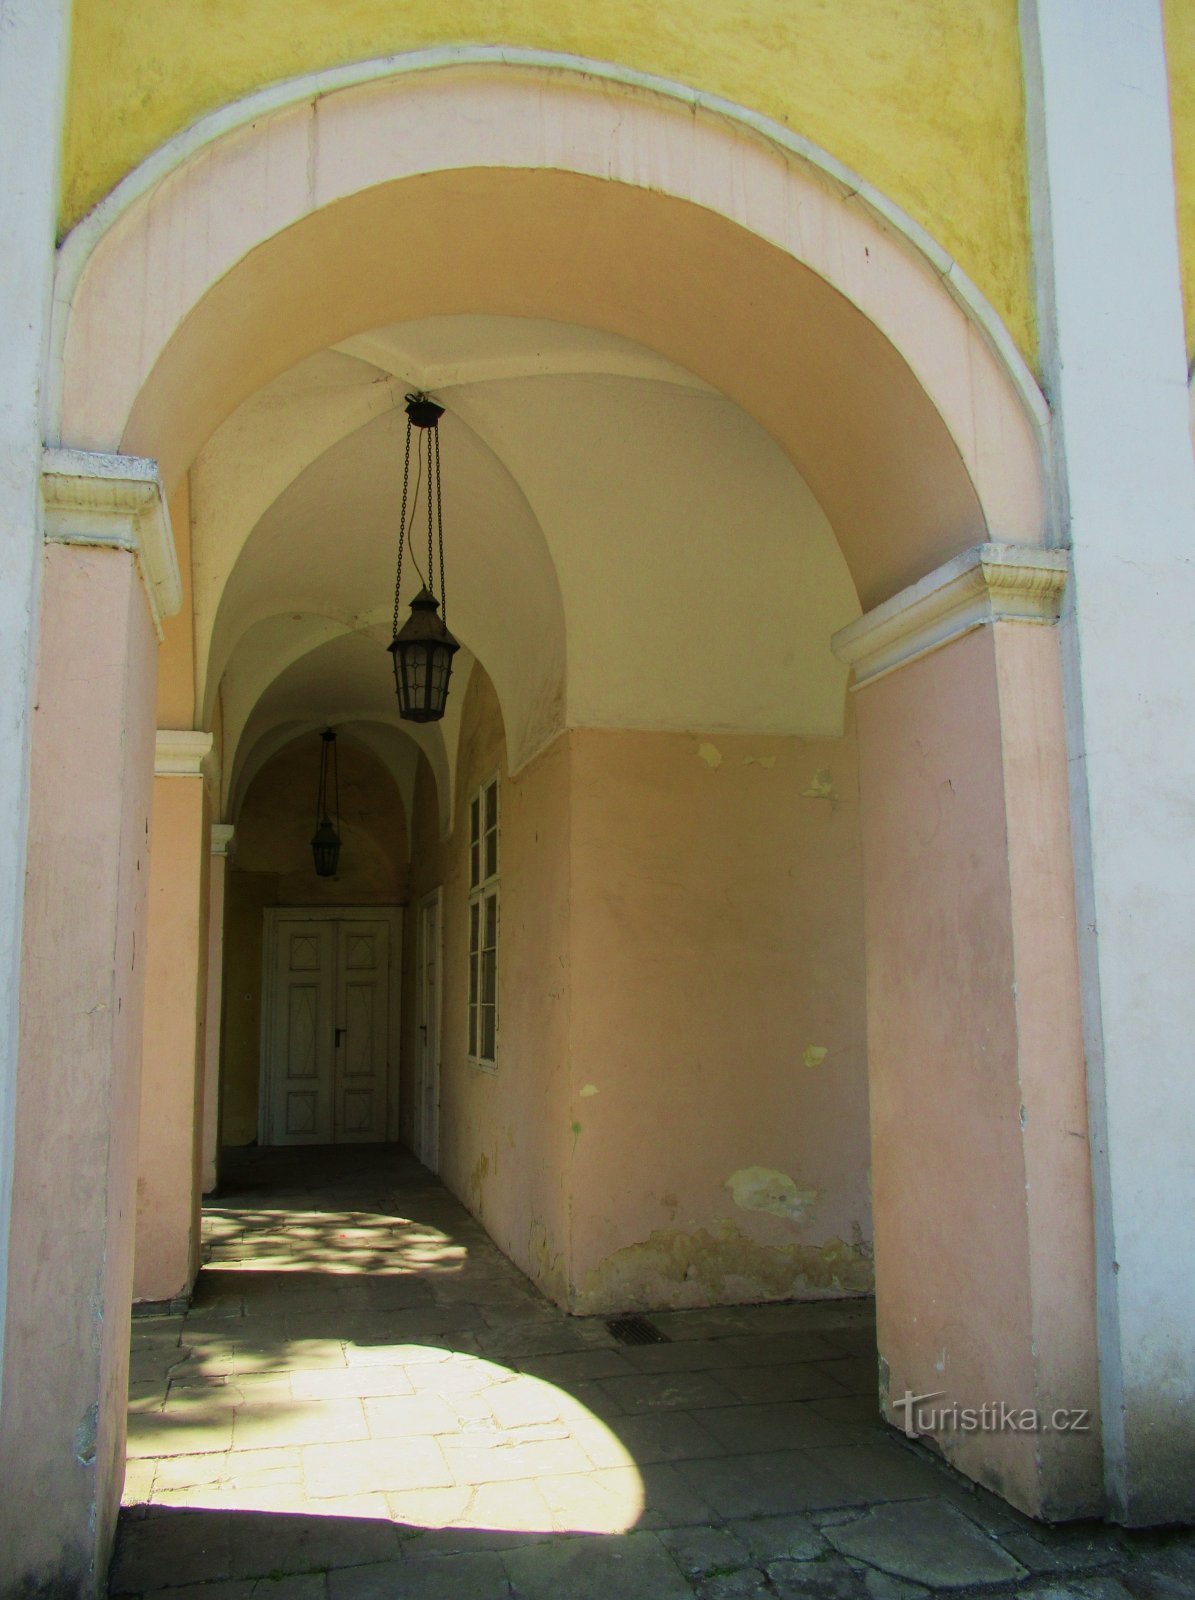 Casa de verano del castillo en Opočno